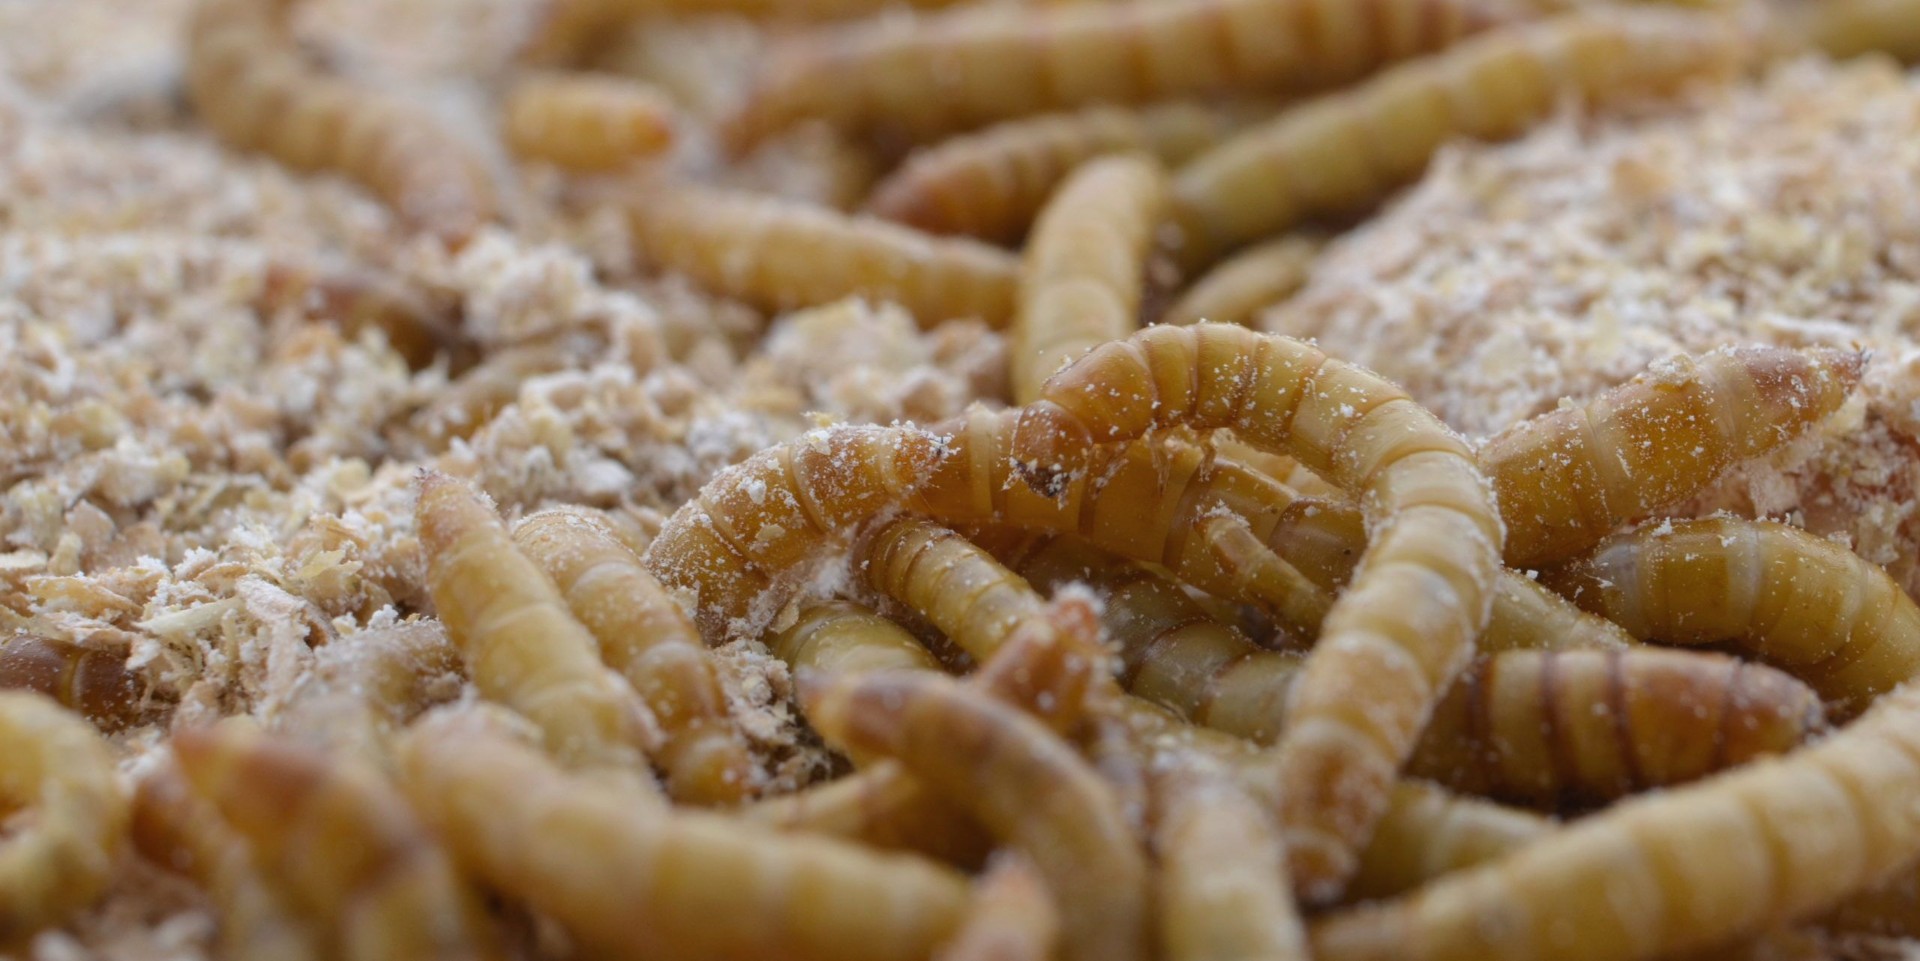 Правительство предложит россиянам сосиски из личинок насекомых